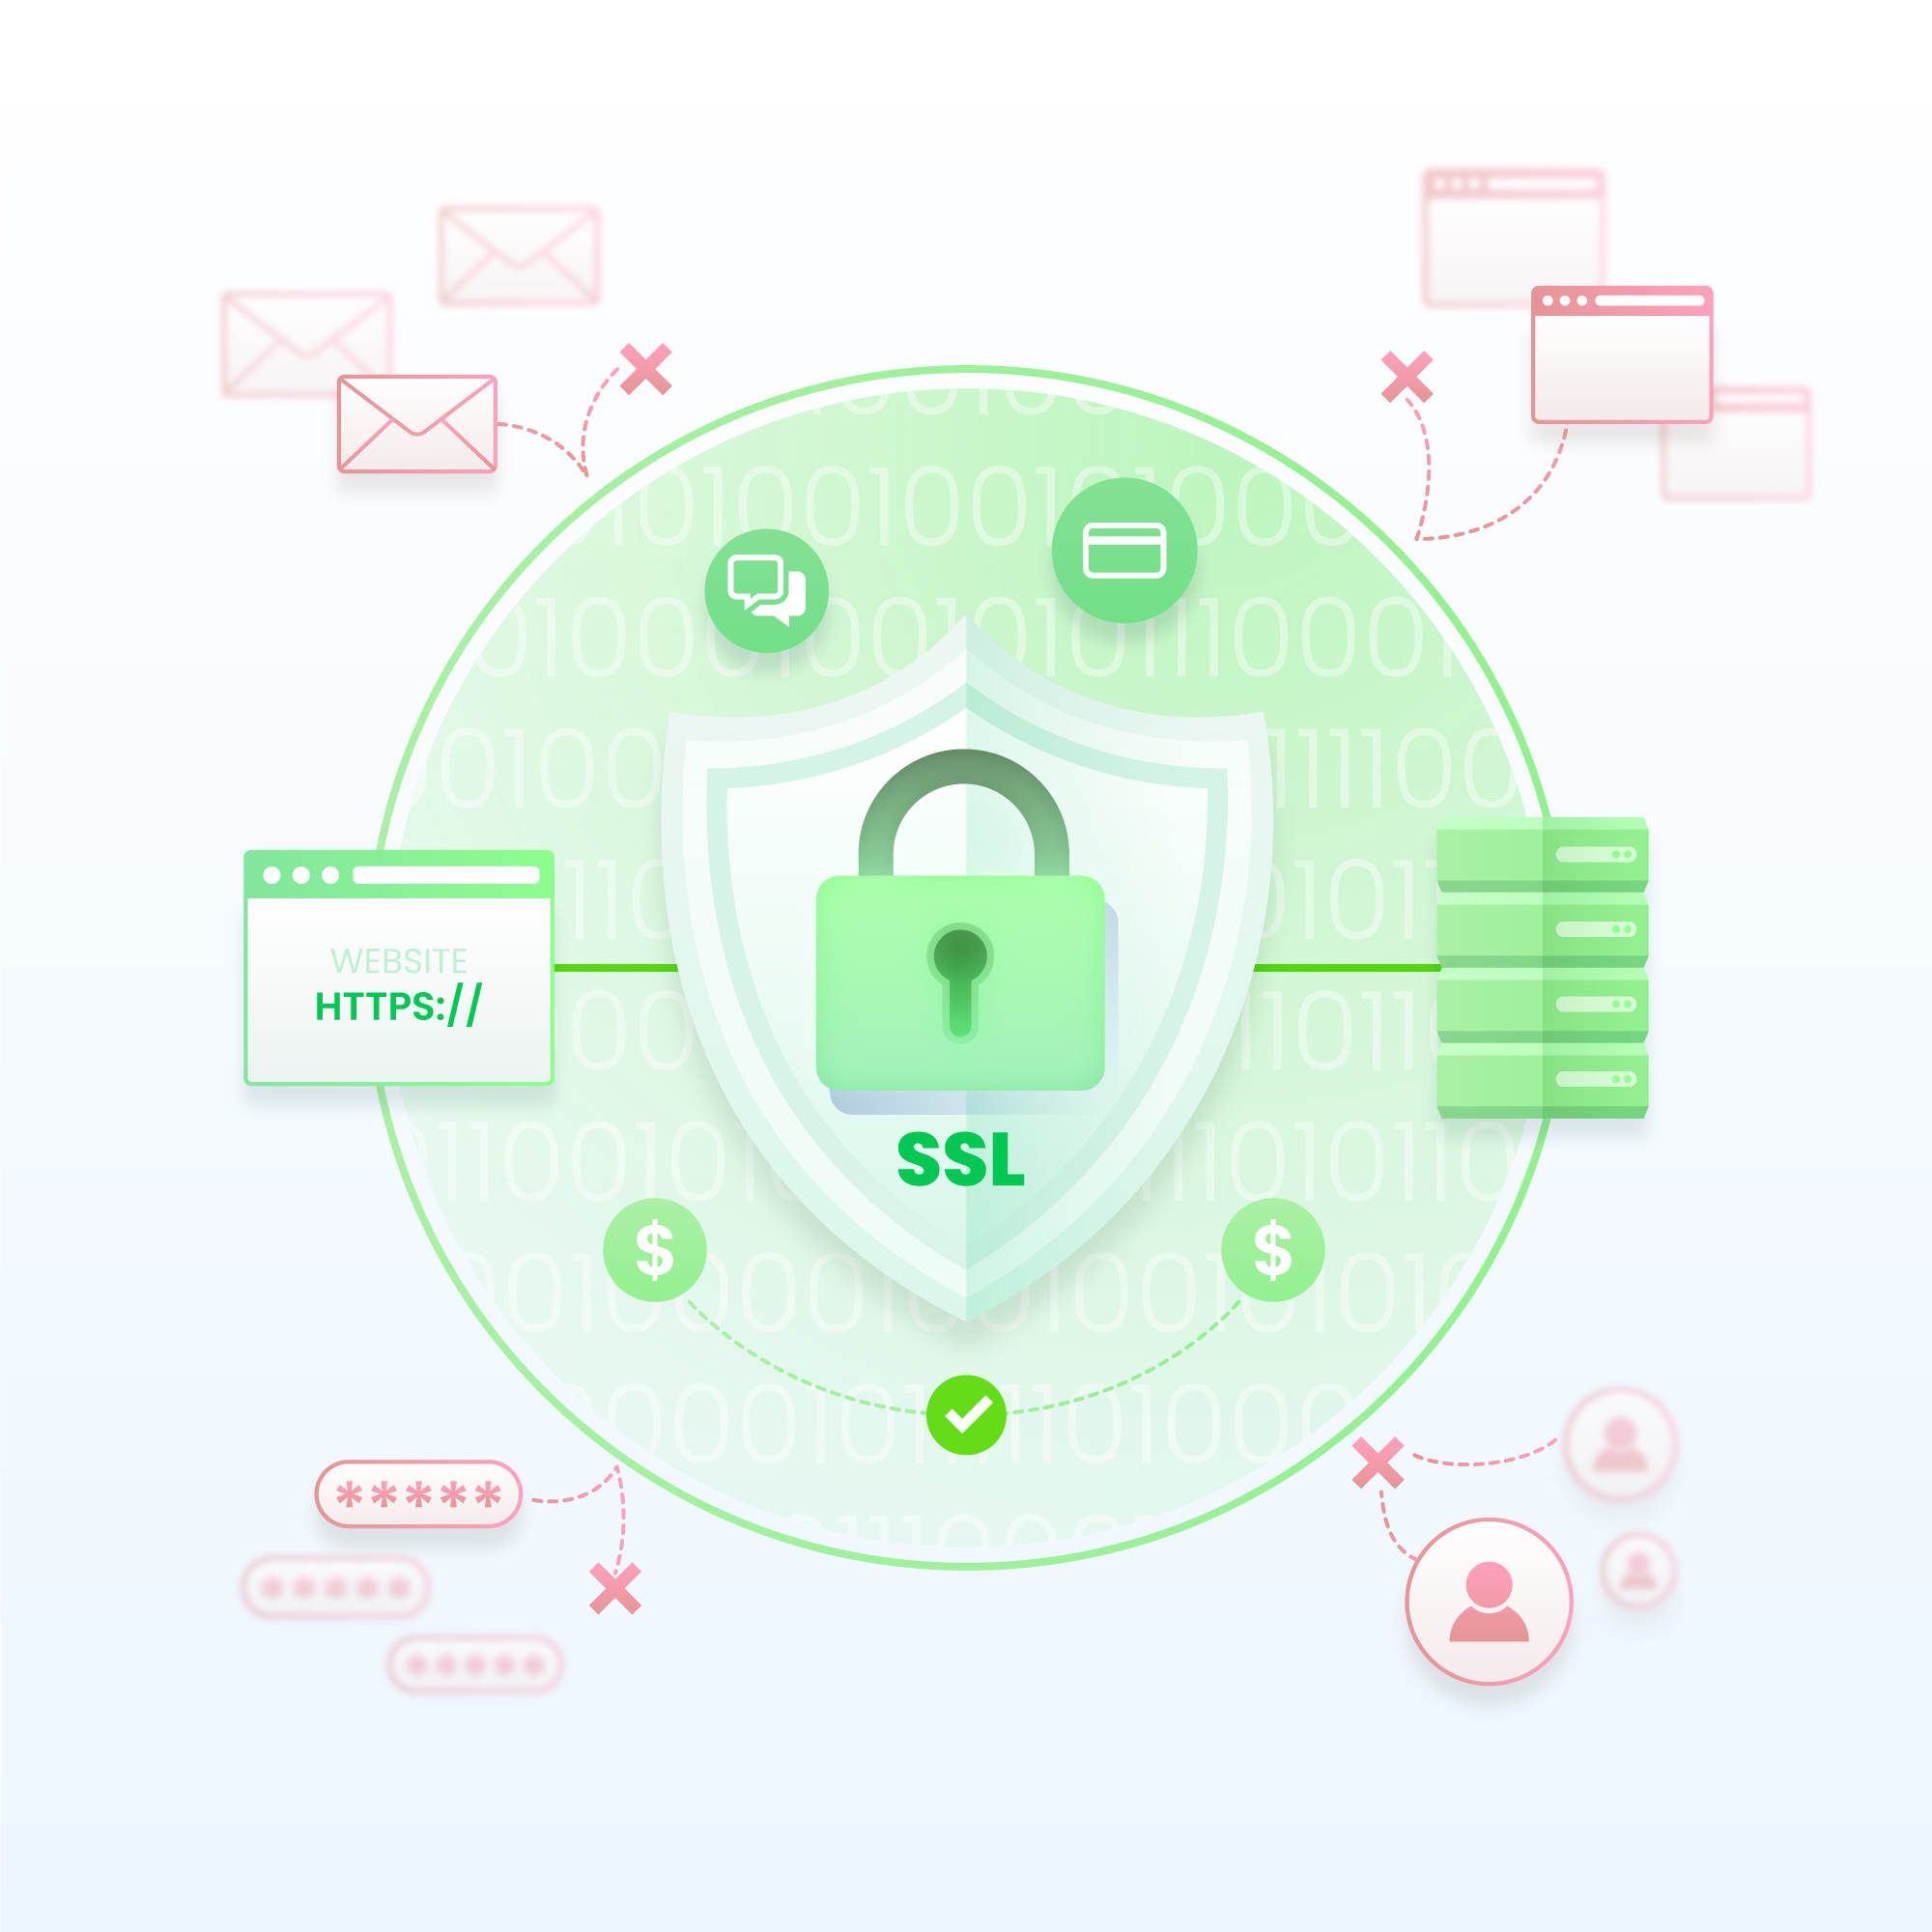 SSL là gì